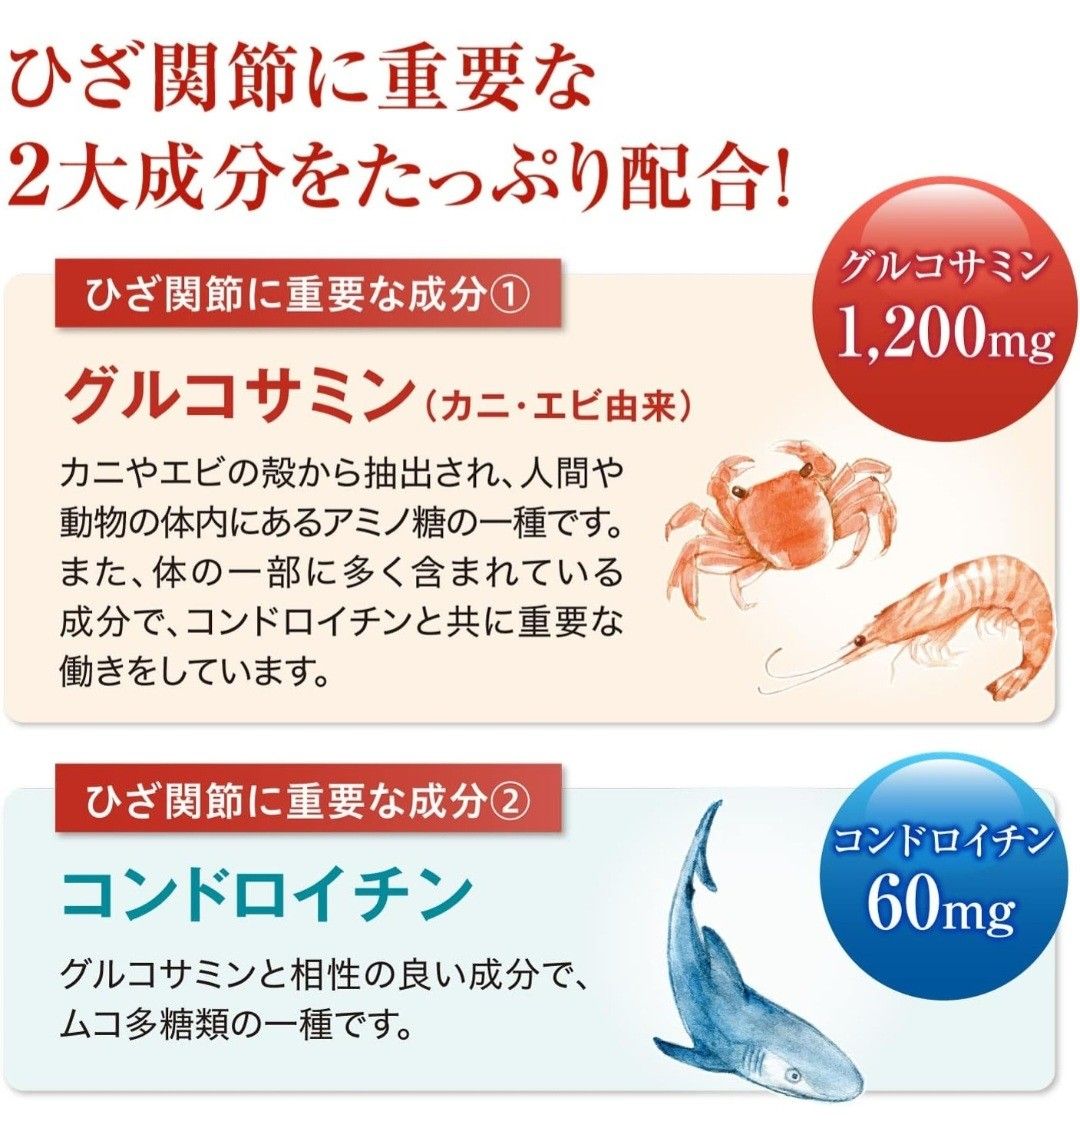 世田谷自然食品 グルコサミン + コンドロイチン (300mg×120粒 / 約15日分) サプリメント